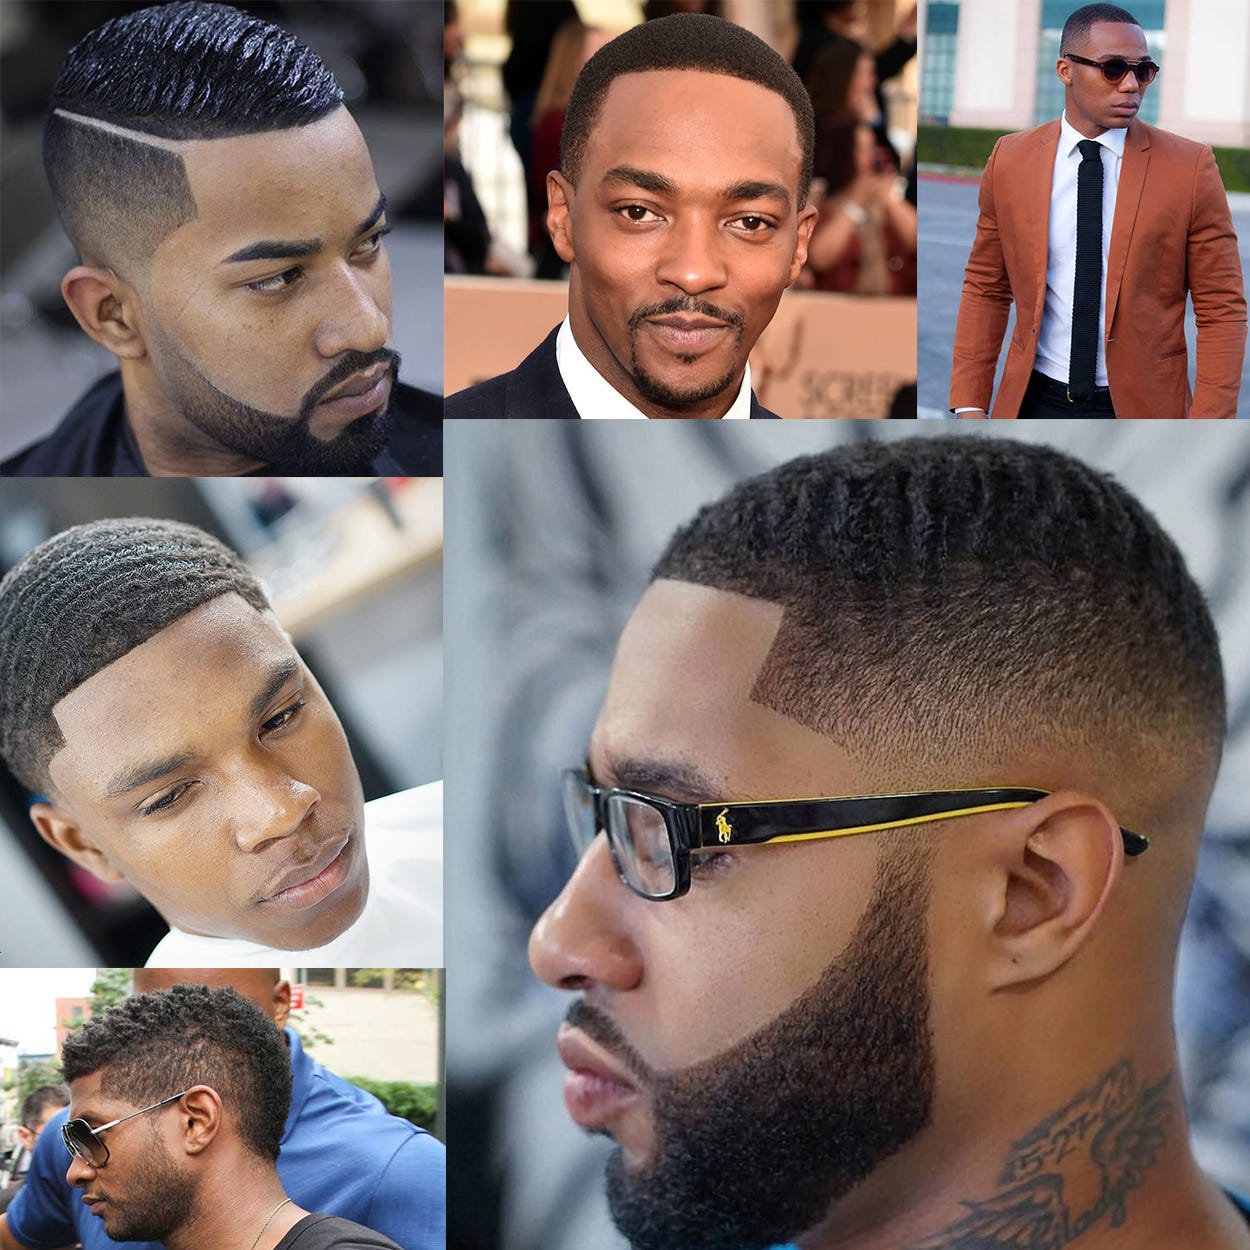 Men Haircut